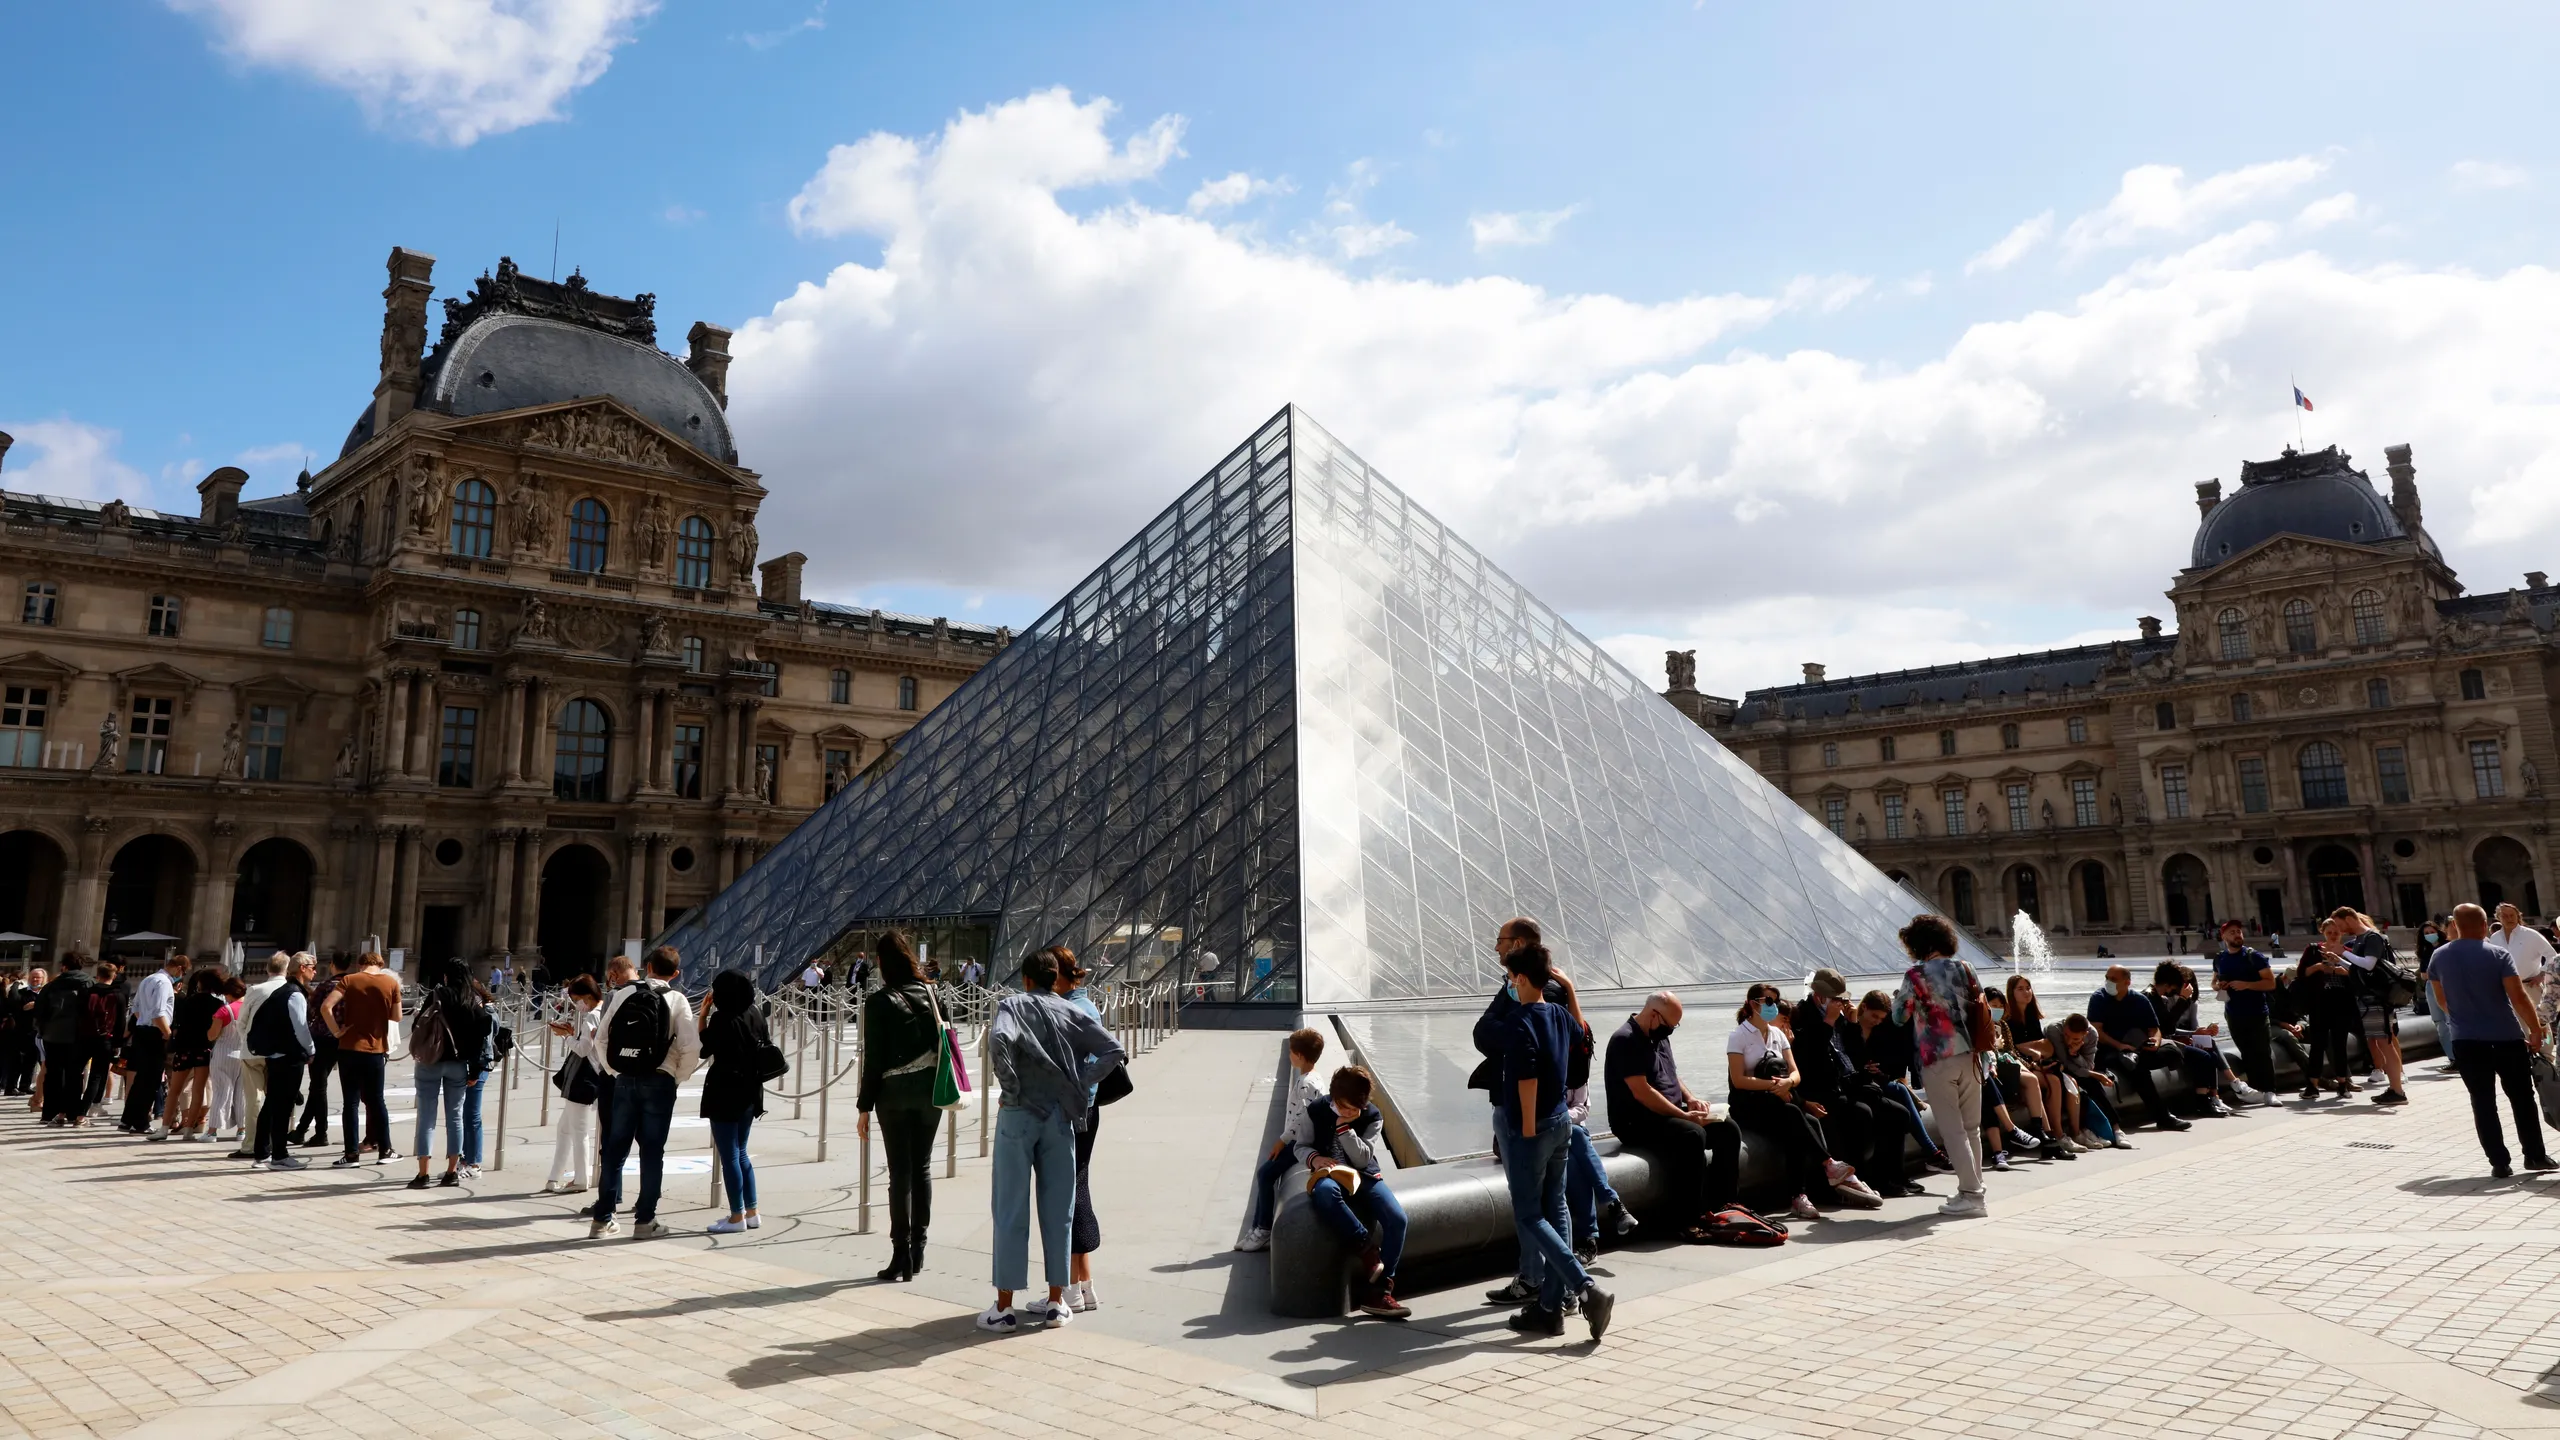 Le Louvre de Paris : Joyau Mondial des Arts - La Maison de la Célèbre Joconde de Léonard de Vinci